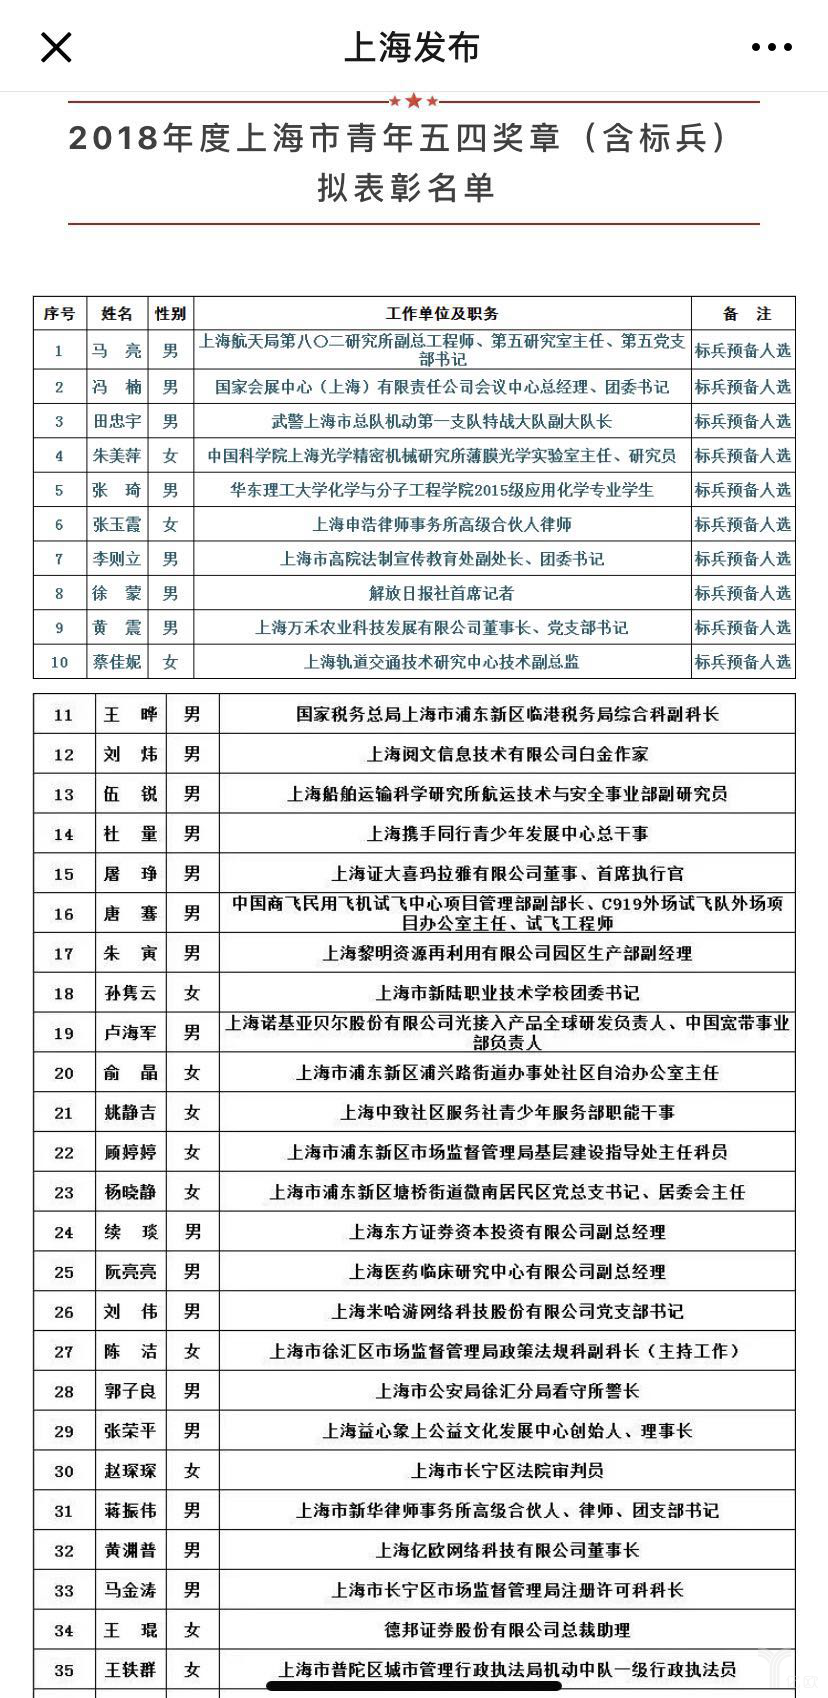 2018年度上海市青年五四奖章表彰名单.png